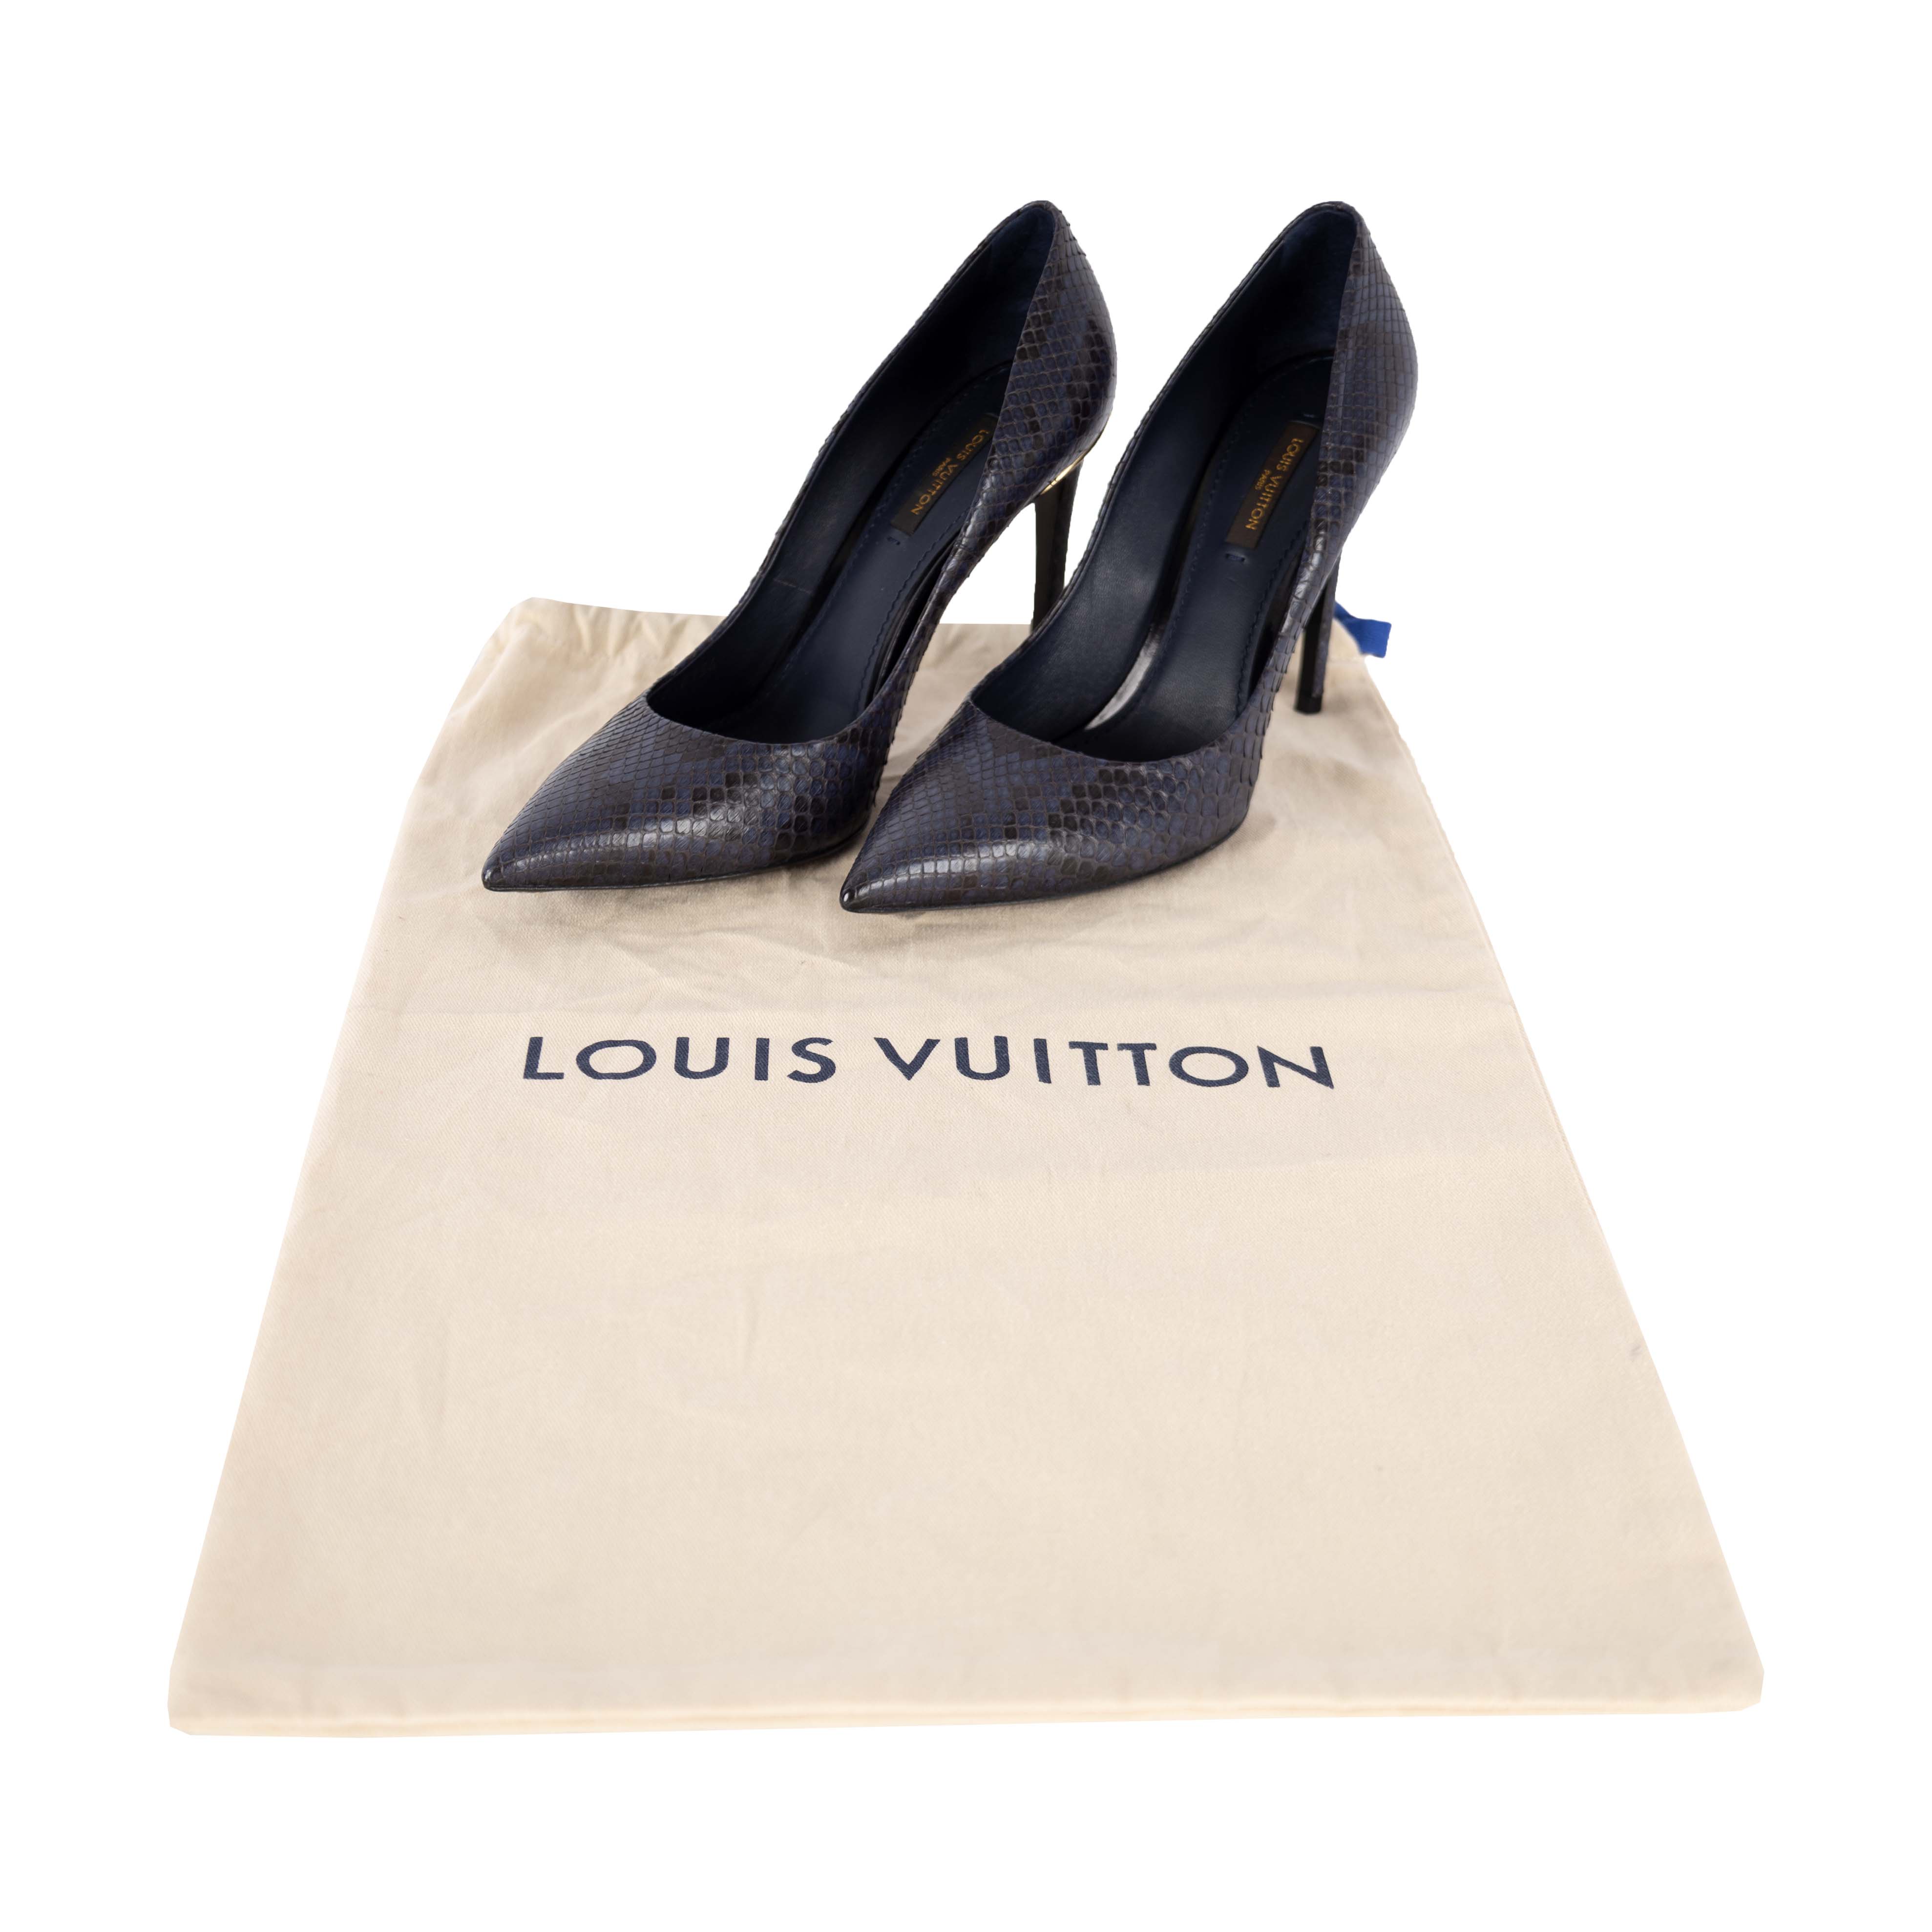 Louis Vuitton Cherie Pump BLACK. Size 37.5